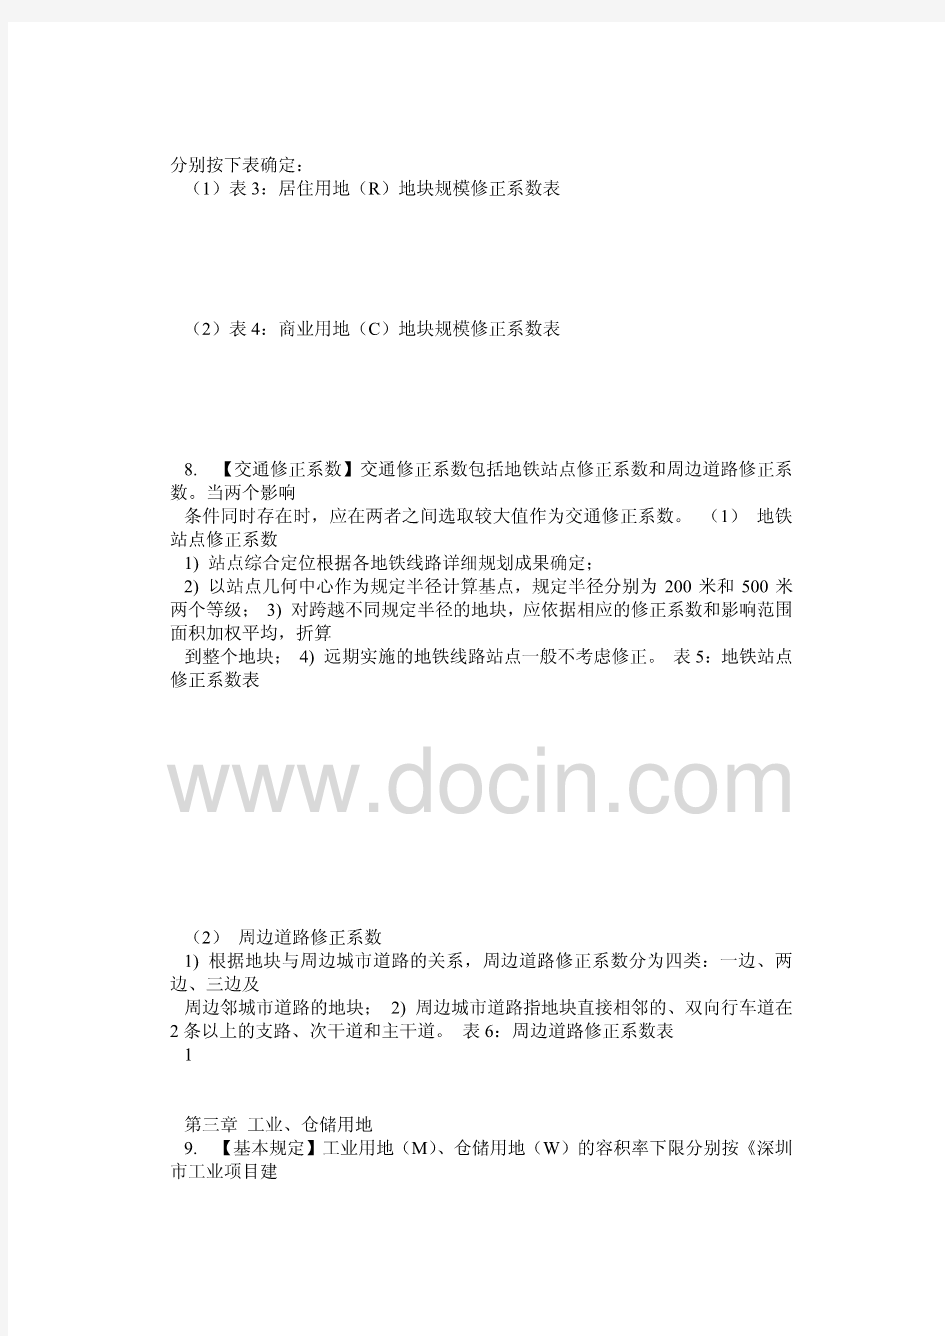 深圳市法定图则地块容积率确定技术指引